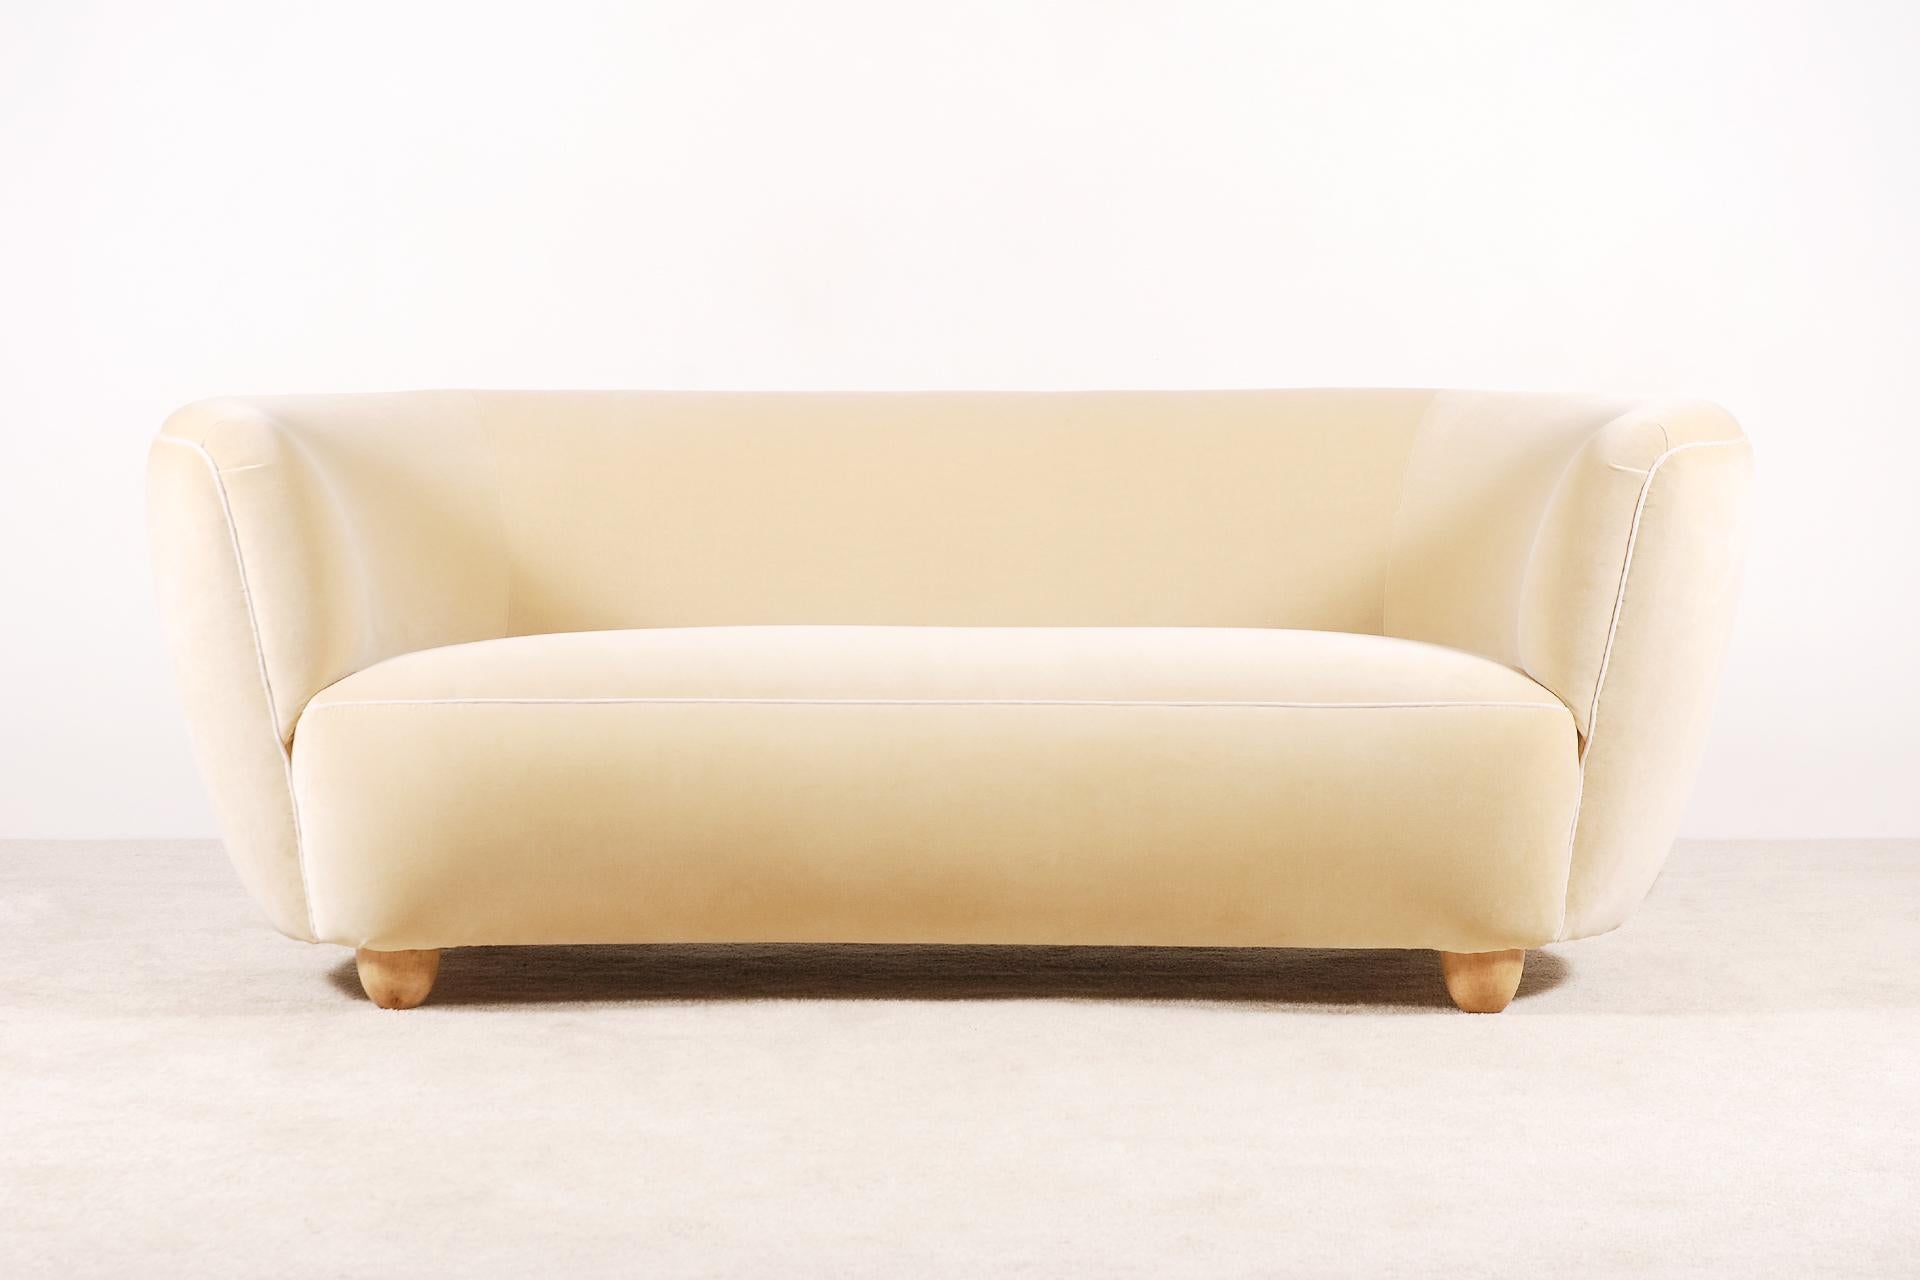 Seltenes und elegantes, geschwungenes Dreisitzer-Sofa, hergestellt in Dänemark in den 1940er Jahren.
Sehr weicher und bequemer Sitz. Füße aus heller Eiche.
Perfekter Zustand.

Originalstück aus den 1940er Jahren, das von den besten französischen